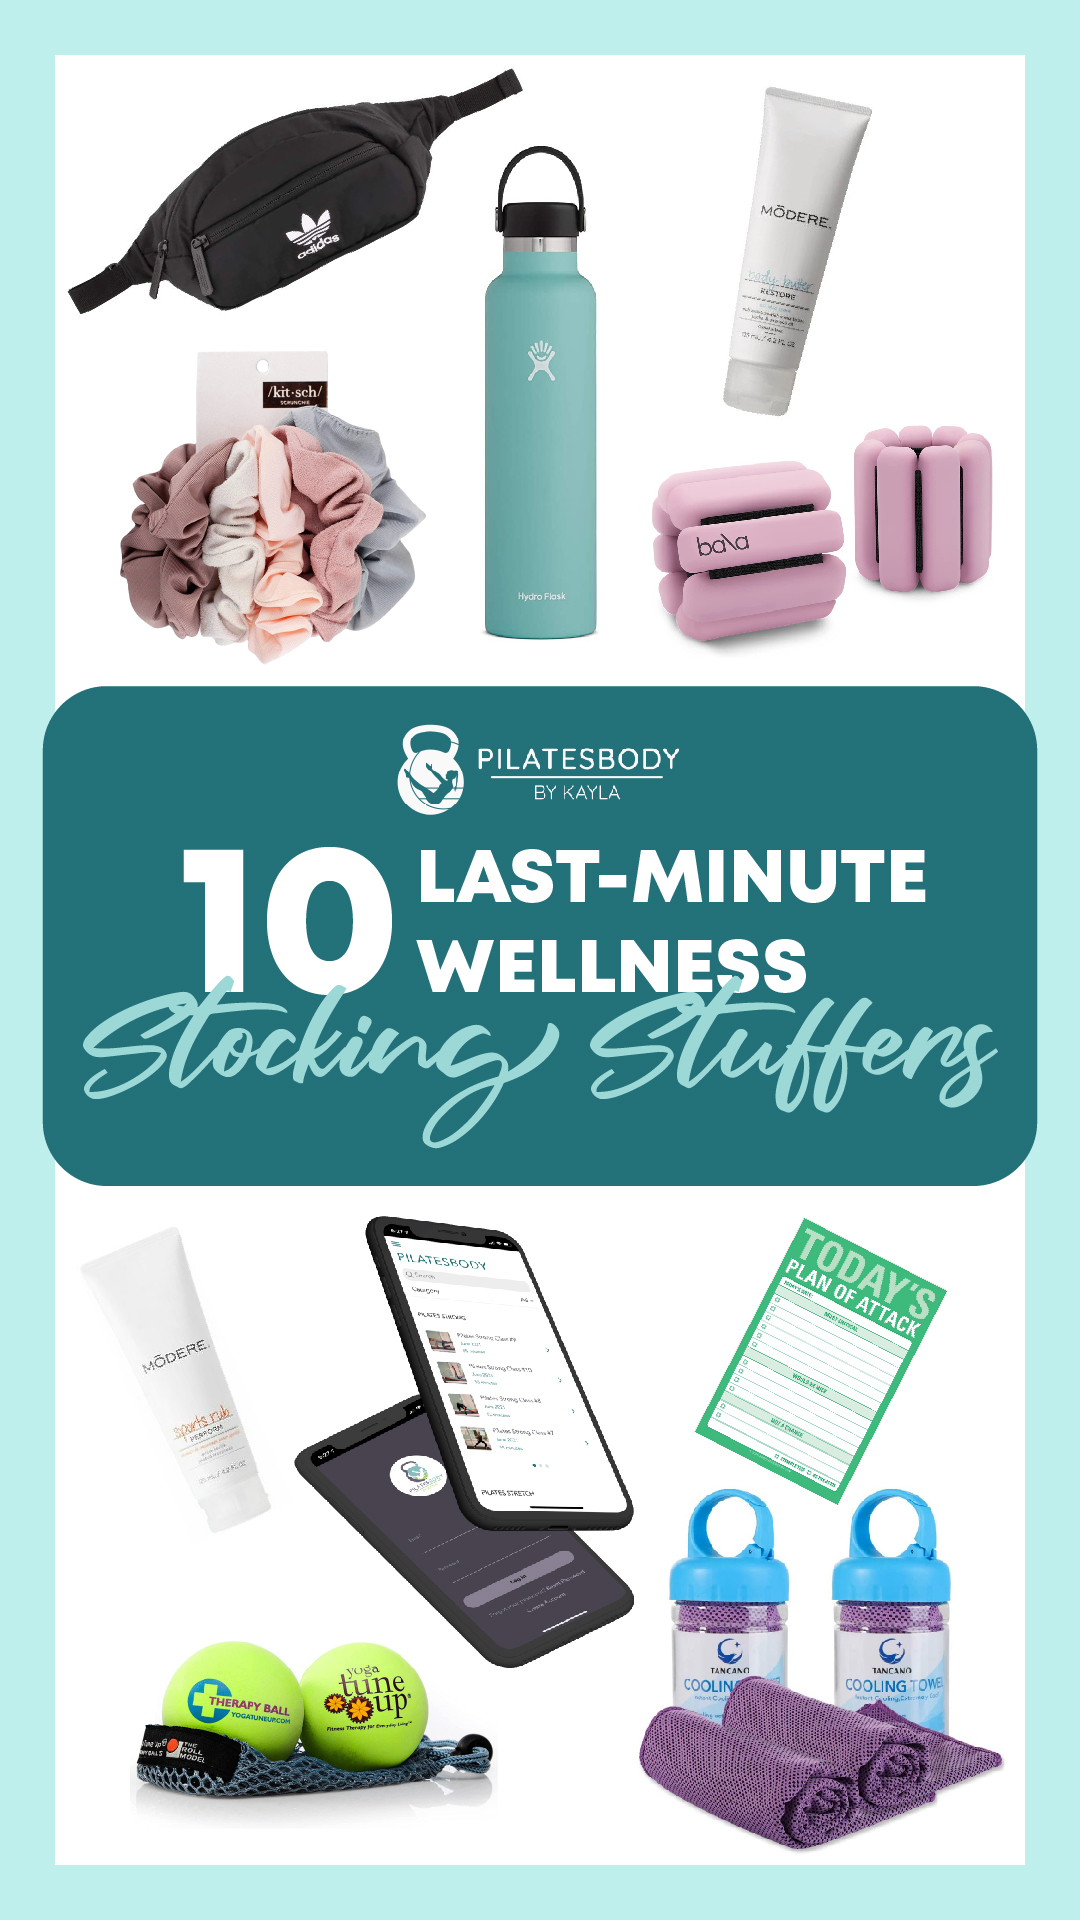 10 Last-Minute Wellness Stocking Stuffers Gift Guide - PILATESBODY by Kayla